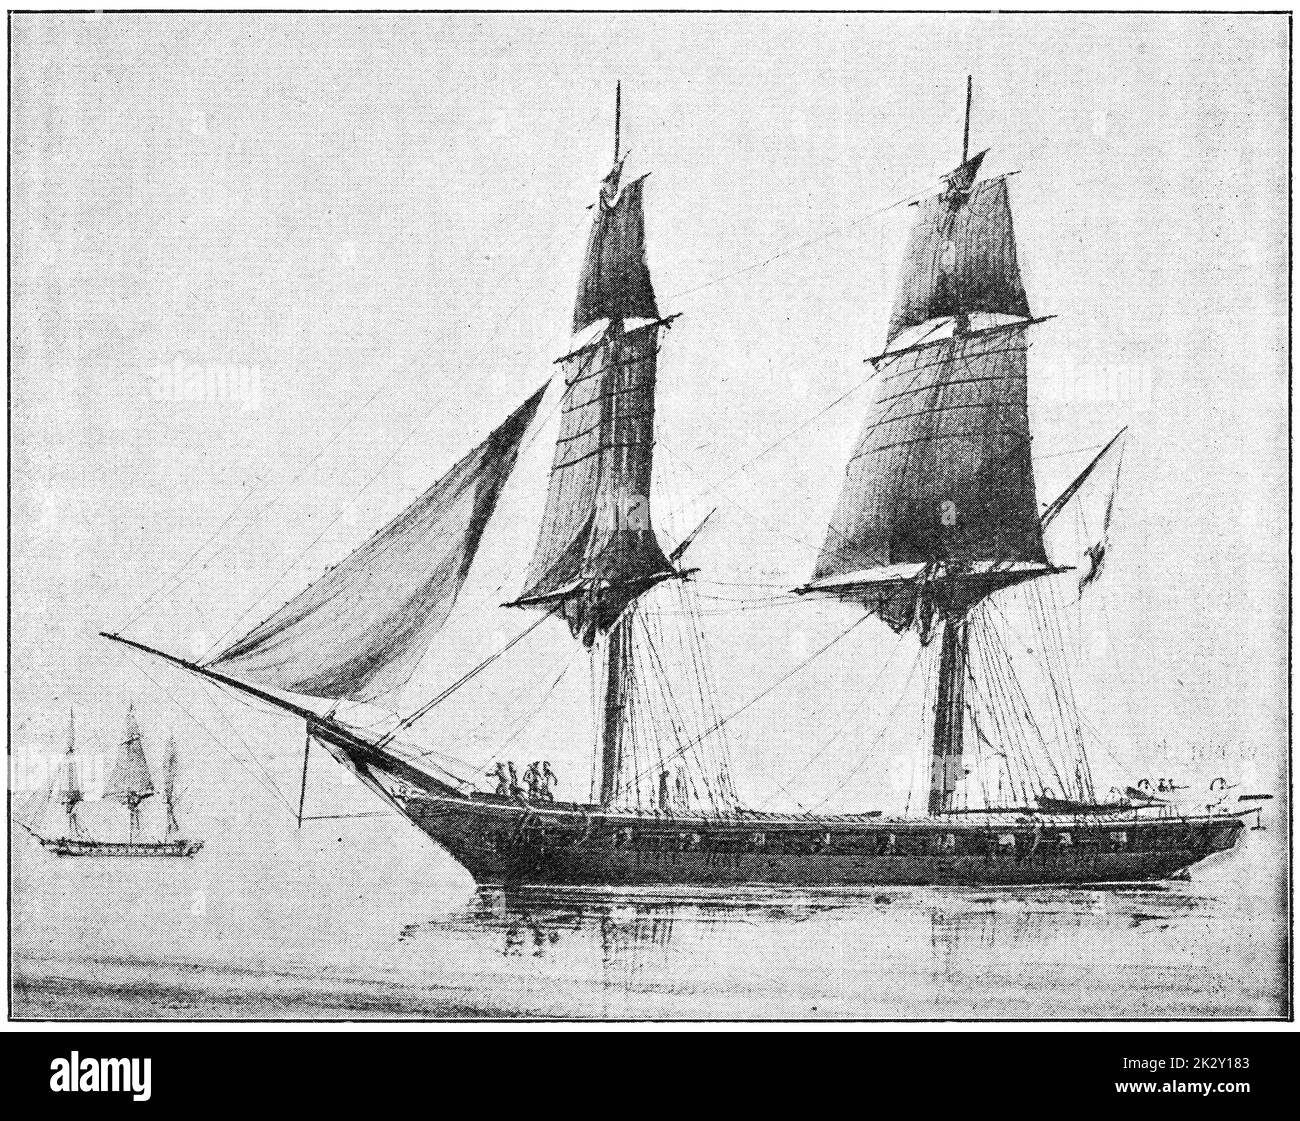 Mercure (1842) - un brig de 18 canons, de la Marine française. Illustration du 19e siècle. Allemagne. Arrière-plan blanc. Banque D'Images